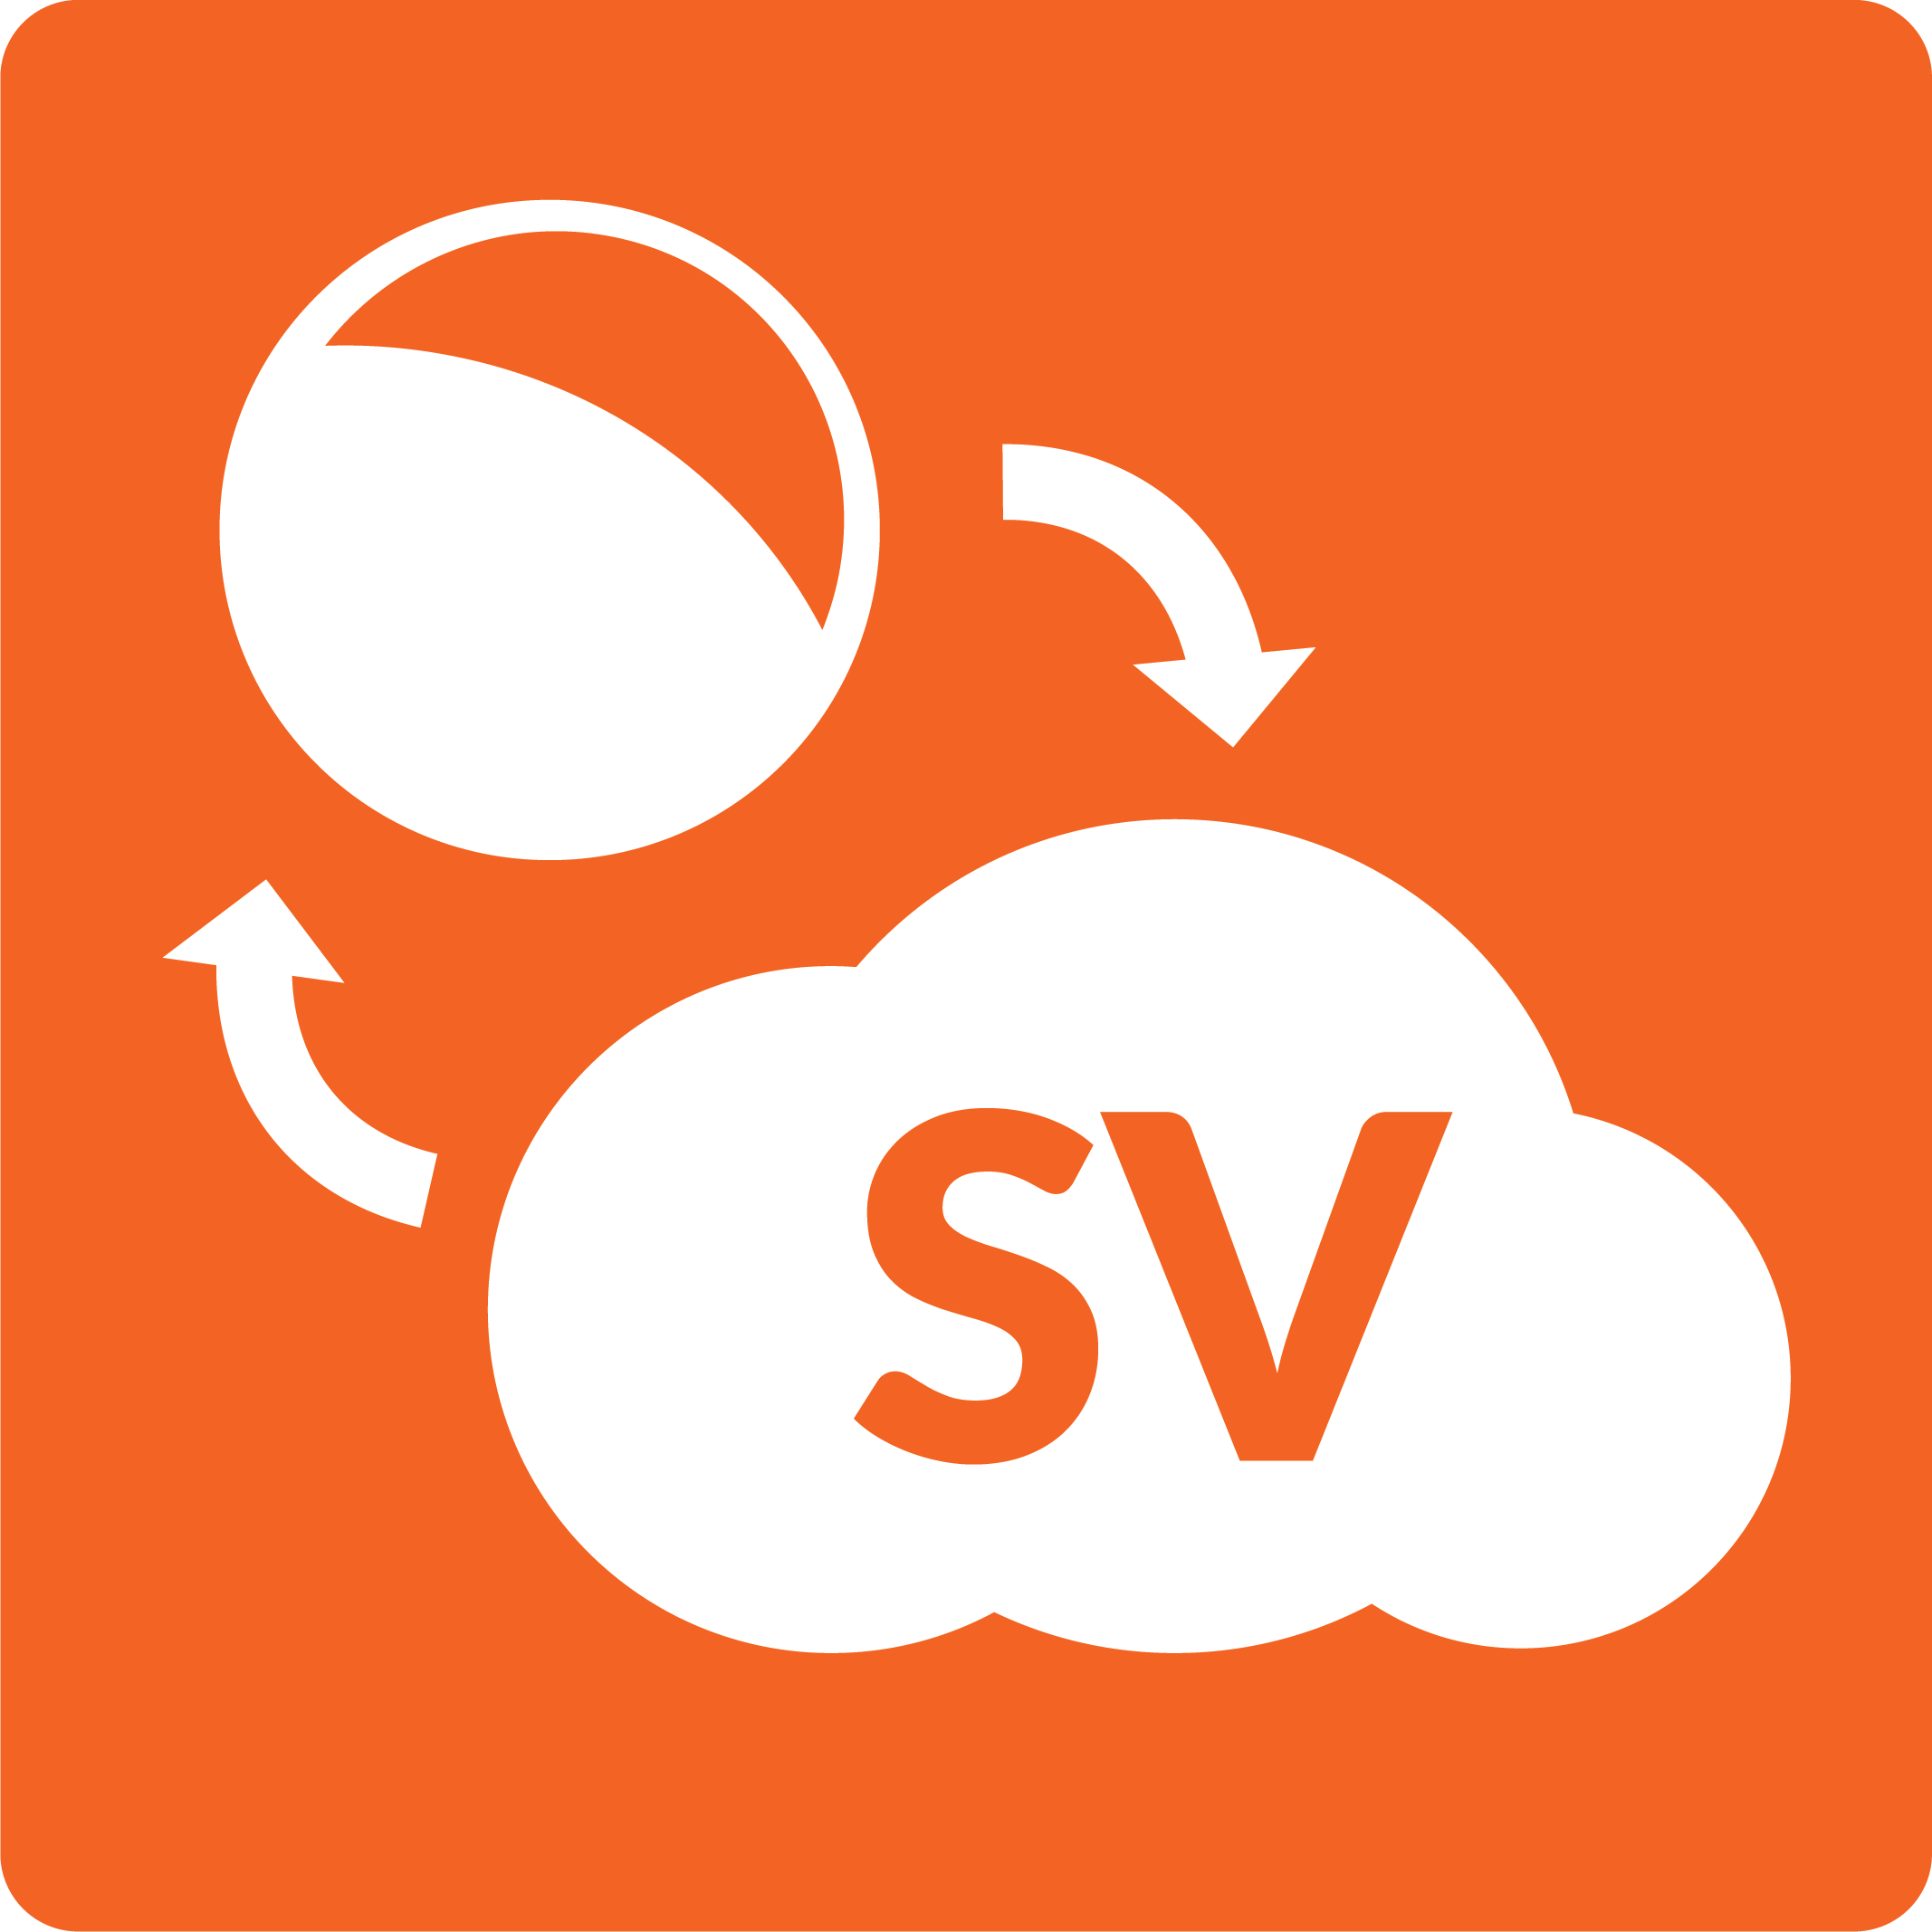 SmartVault Logo